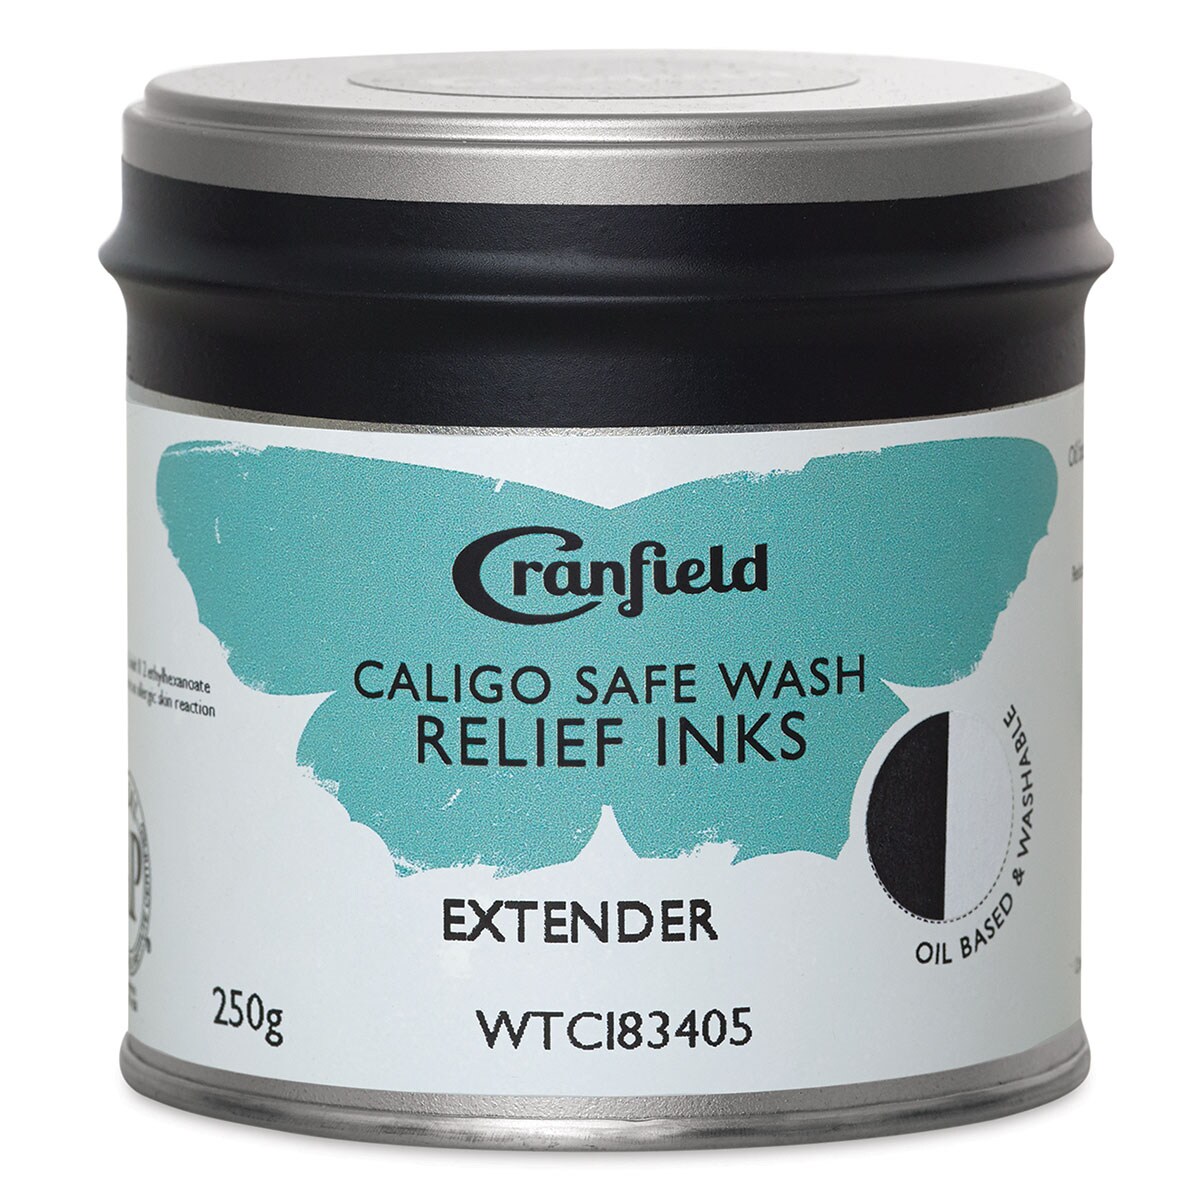 Cranfield Caligo Safe Wash Relief Ink Extender - 250 g